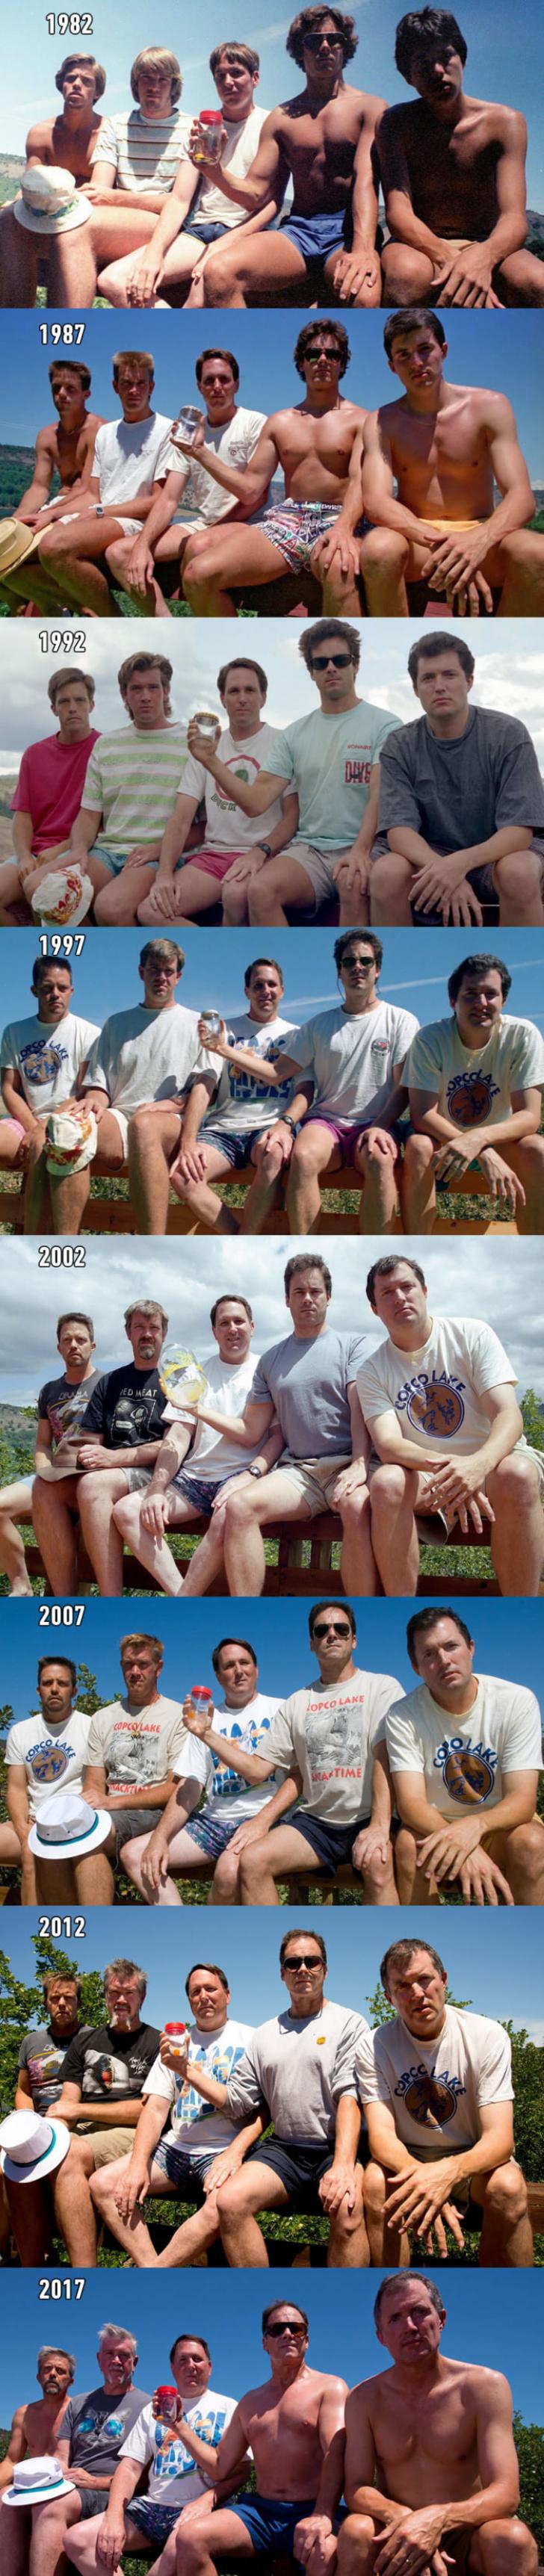 На протяжении 35 лет эти 5 одноклассников делают одну и ту же фотографию!